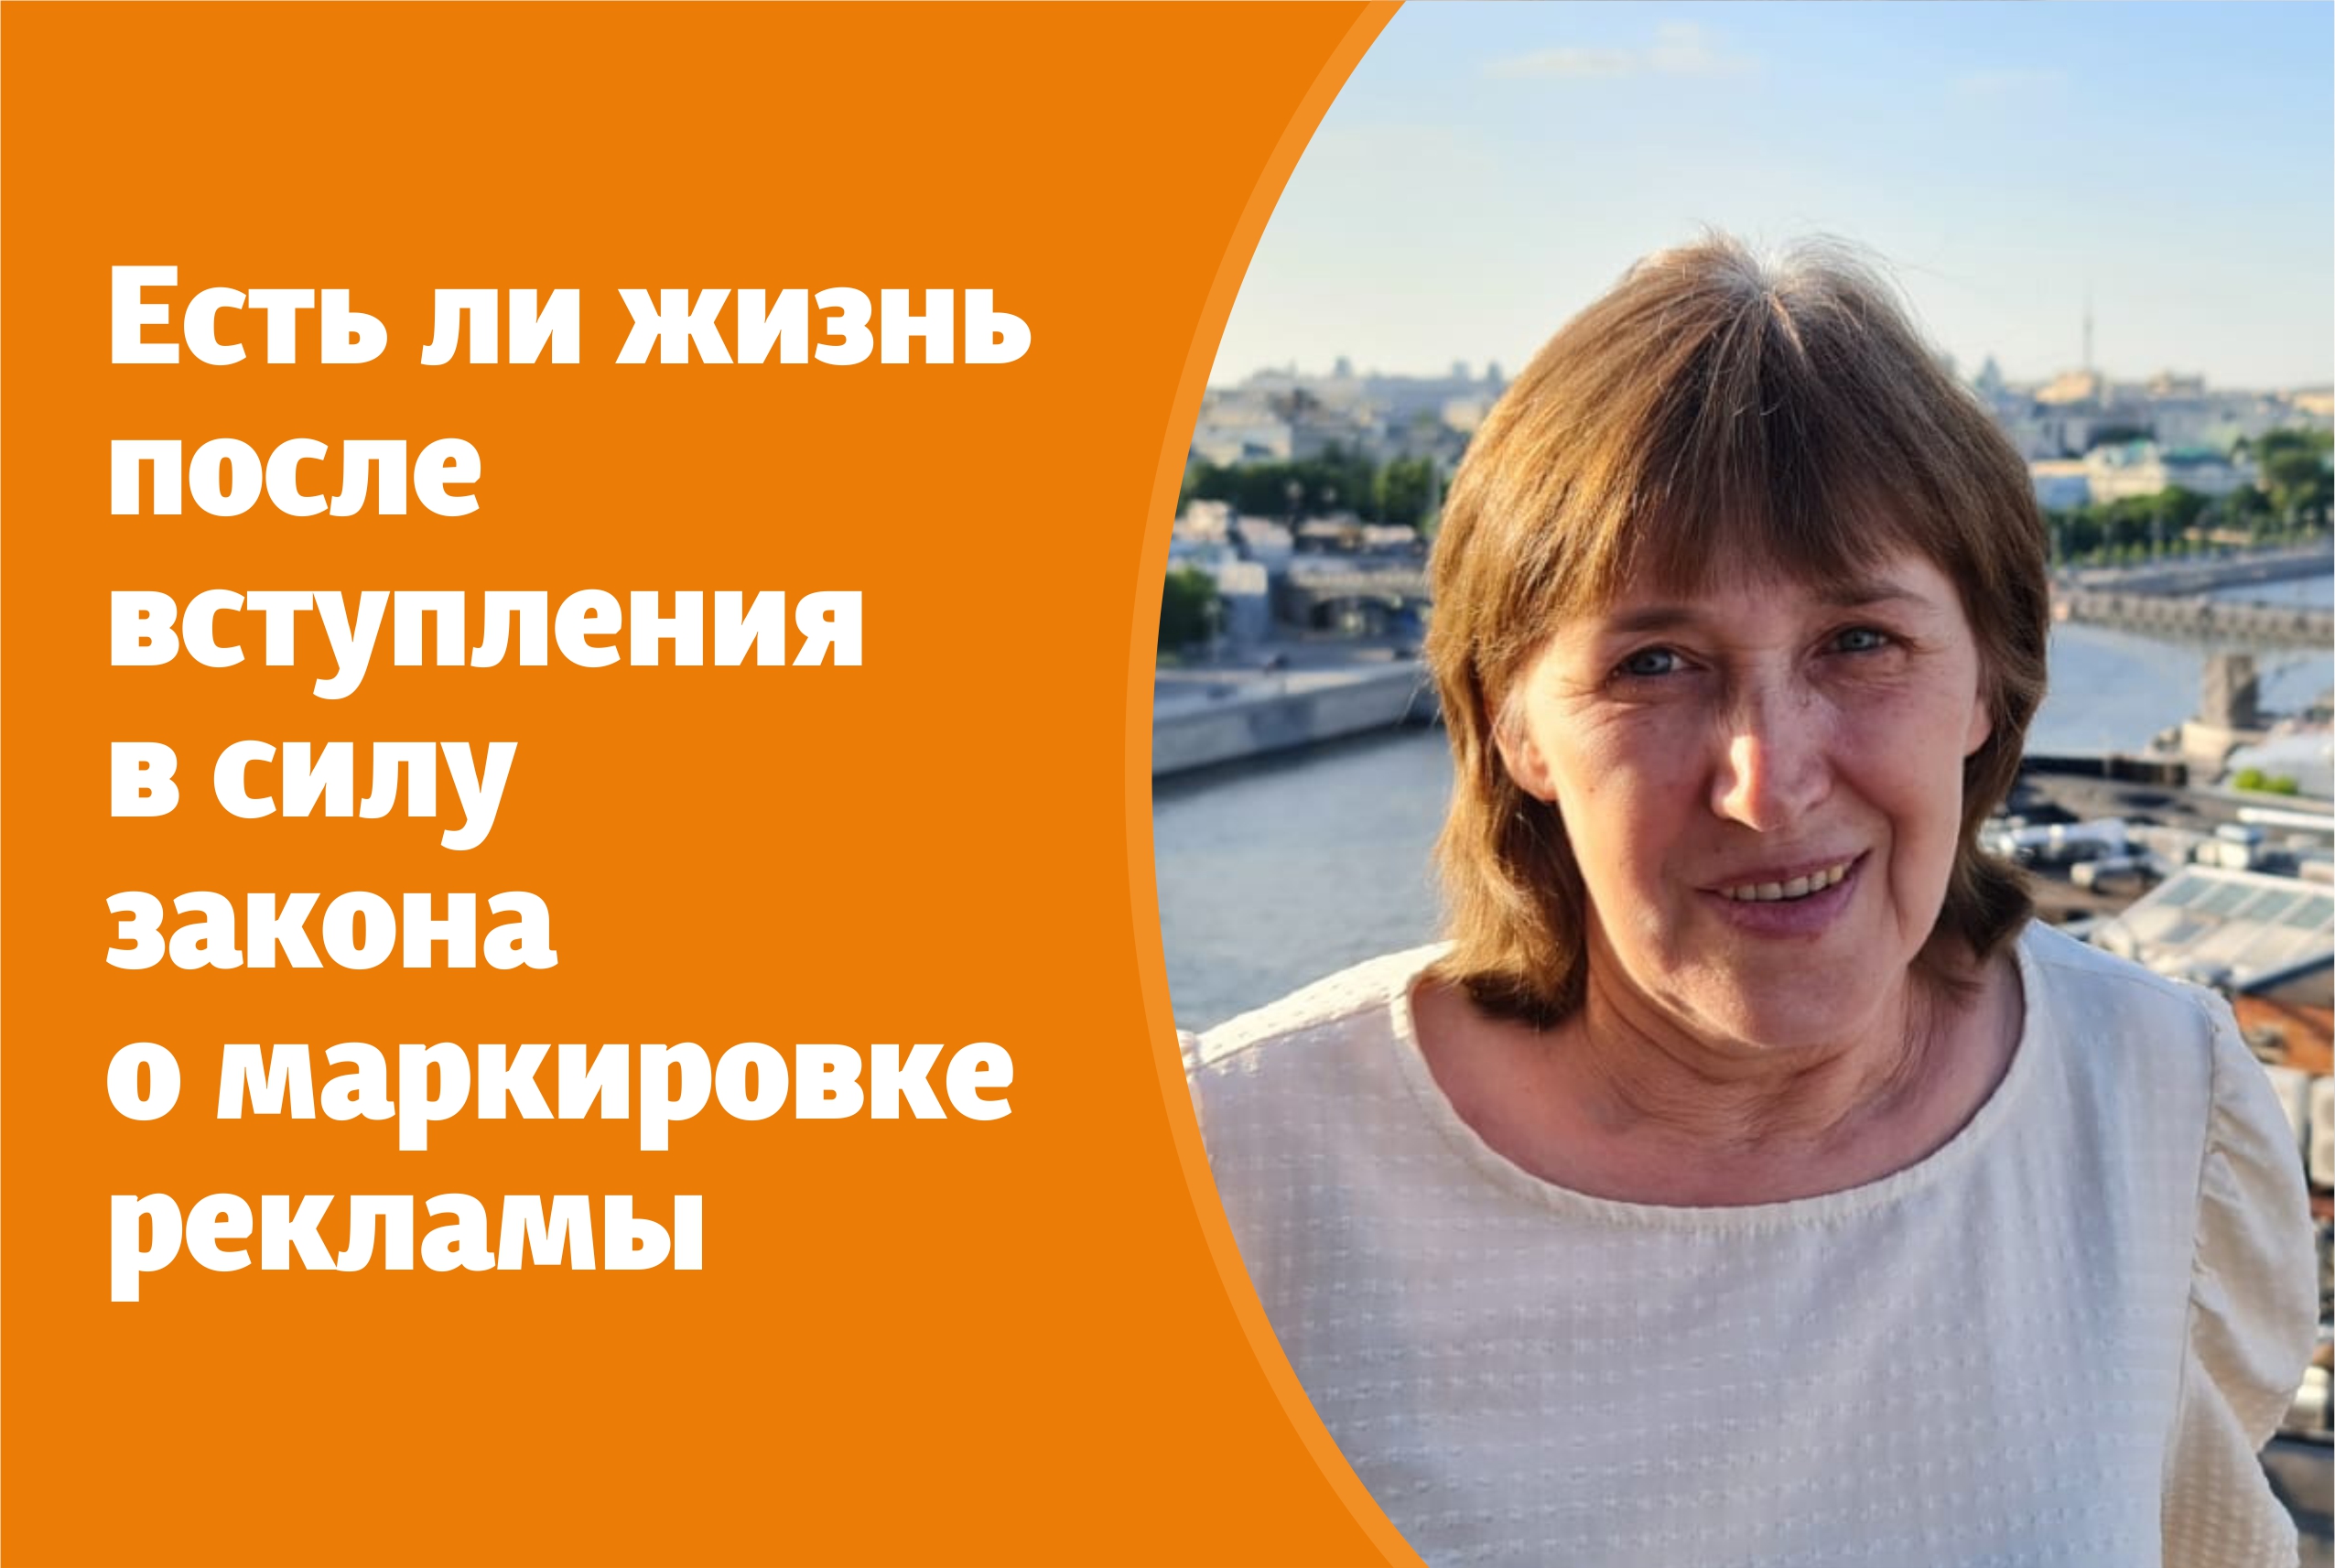 Ирина Зыкова, директор Издательского дома 